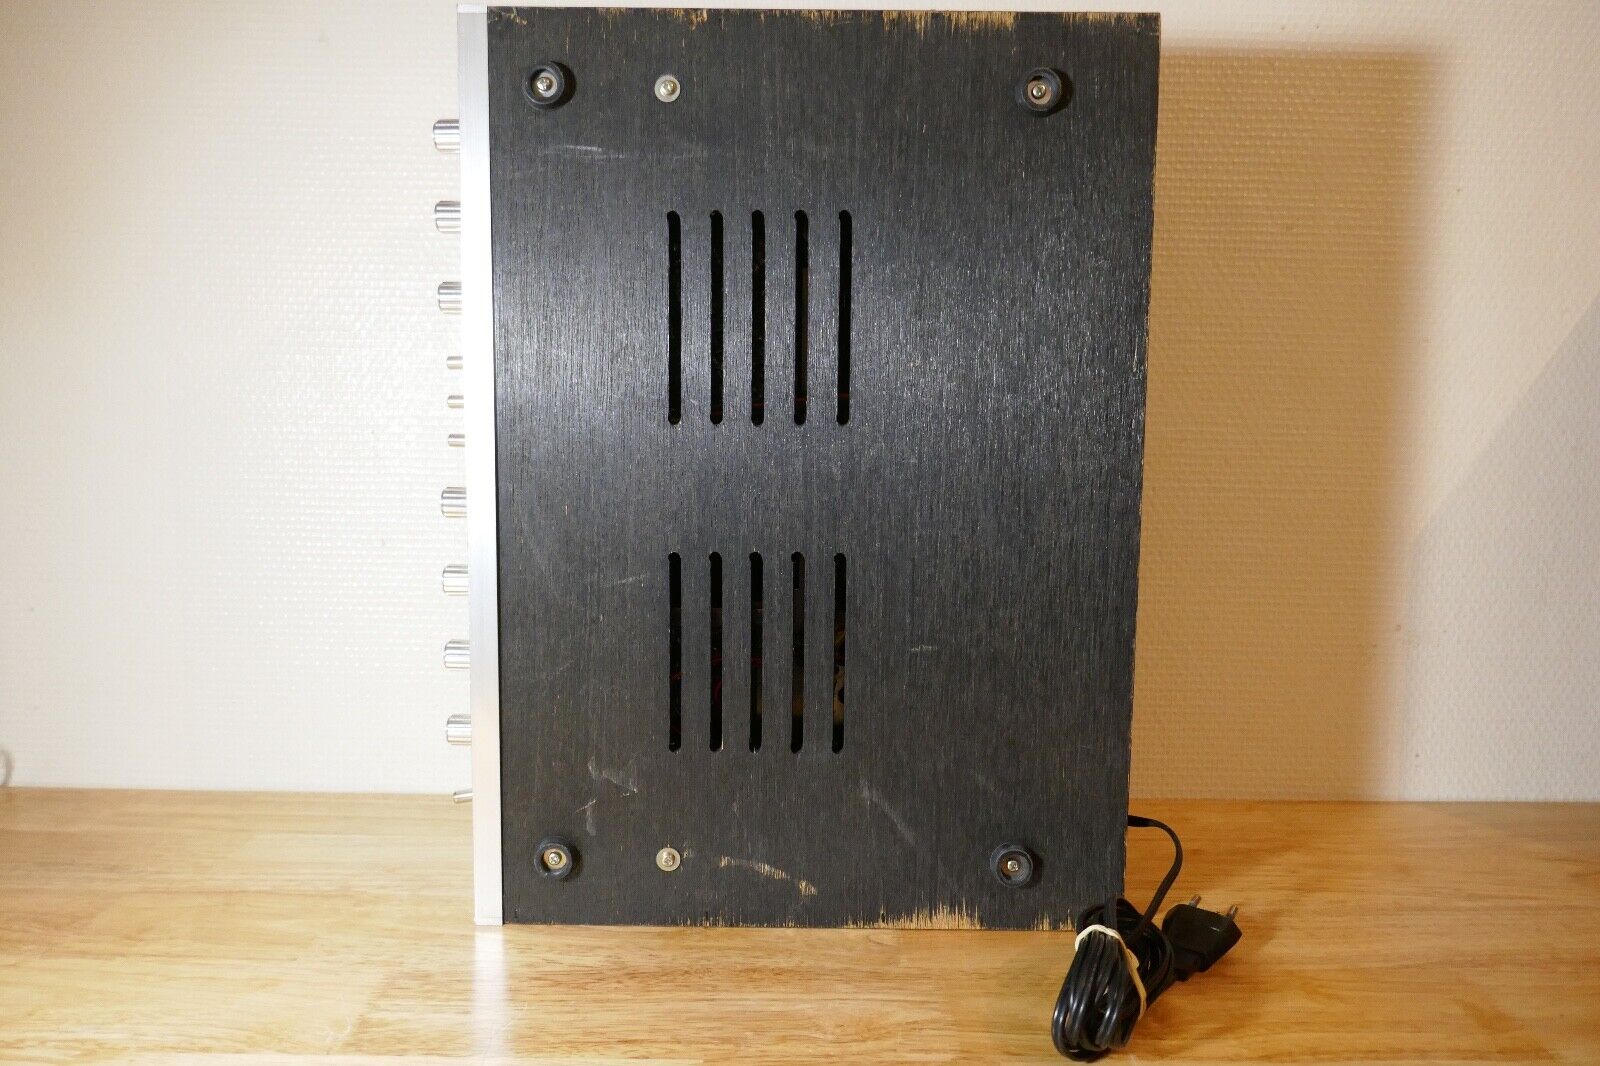 amplificateur amplifier sanyo DCX-2500L vintage occasion